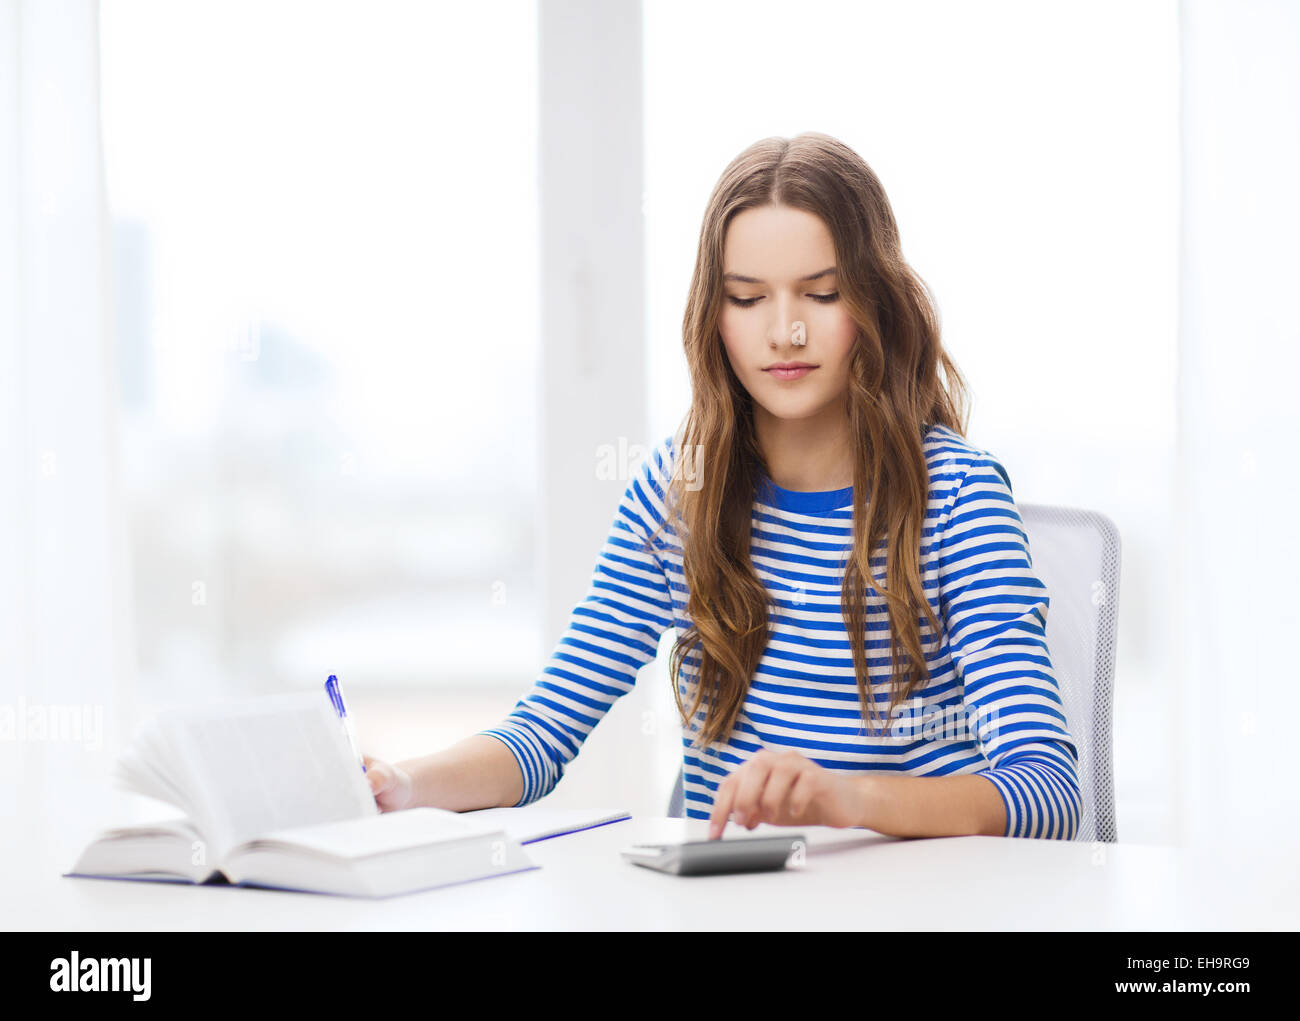 Estudiante chica con libro, calculadora y bloc de notas Foto de stock